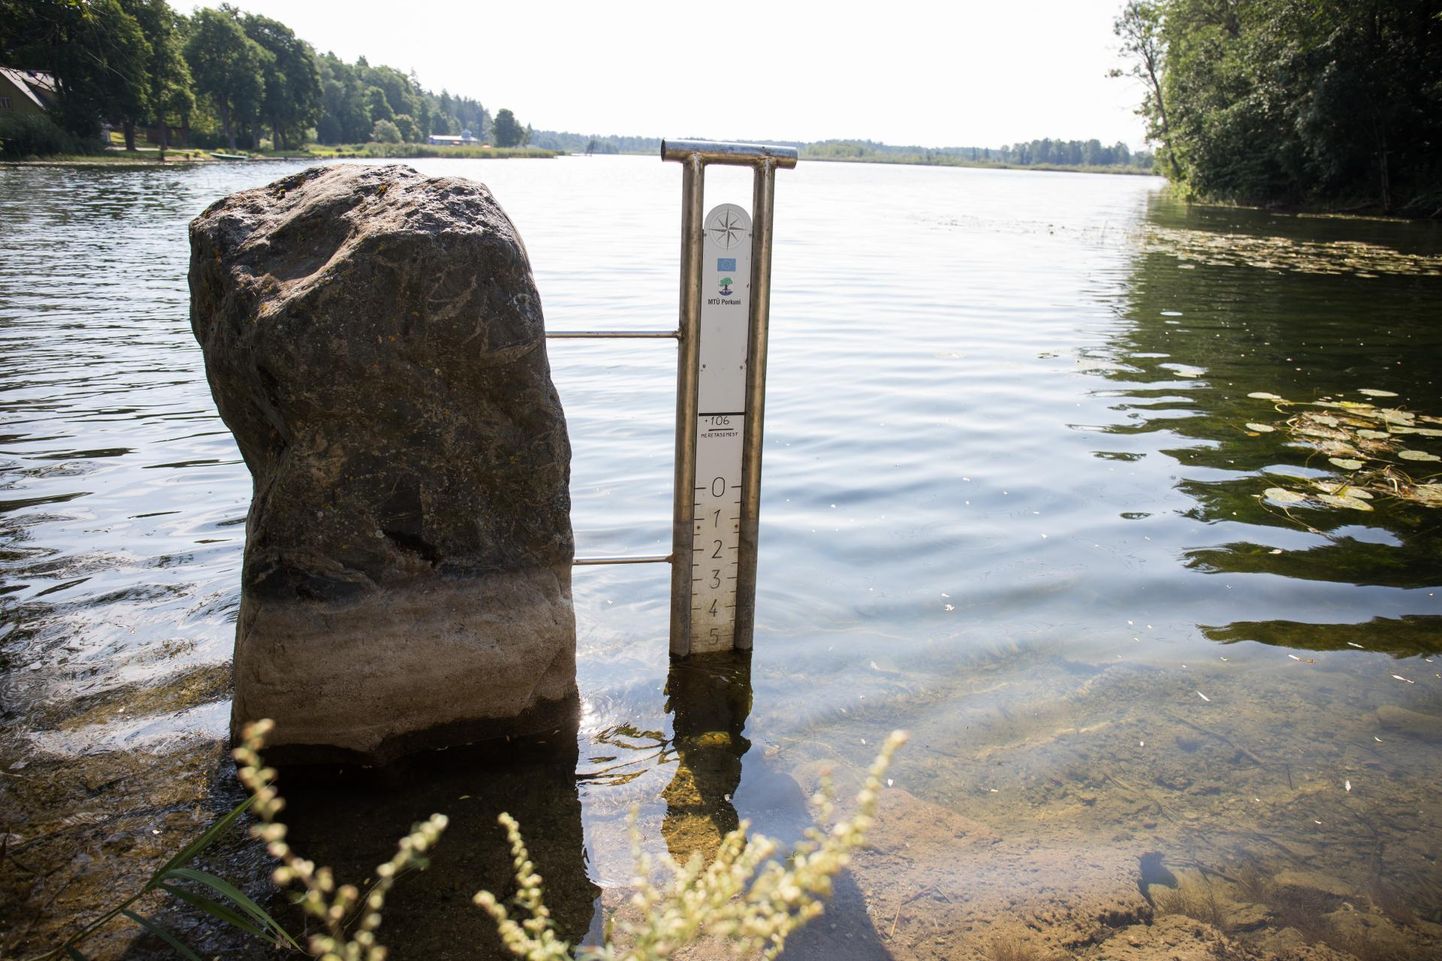 Kui eile näitas mõõdulatt, et veetase on langenud 57–58 sentimeetrit alla nulli ehk järve maksimaalse veetaseme, siis täpselt kuu varem ehk 3. juulil oli veetase umbes 26 sentimeetrit alla maksimumi.